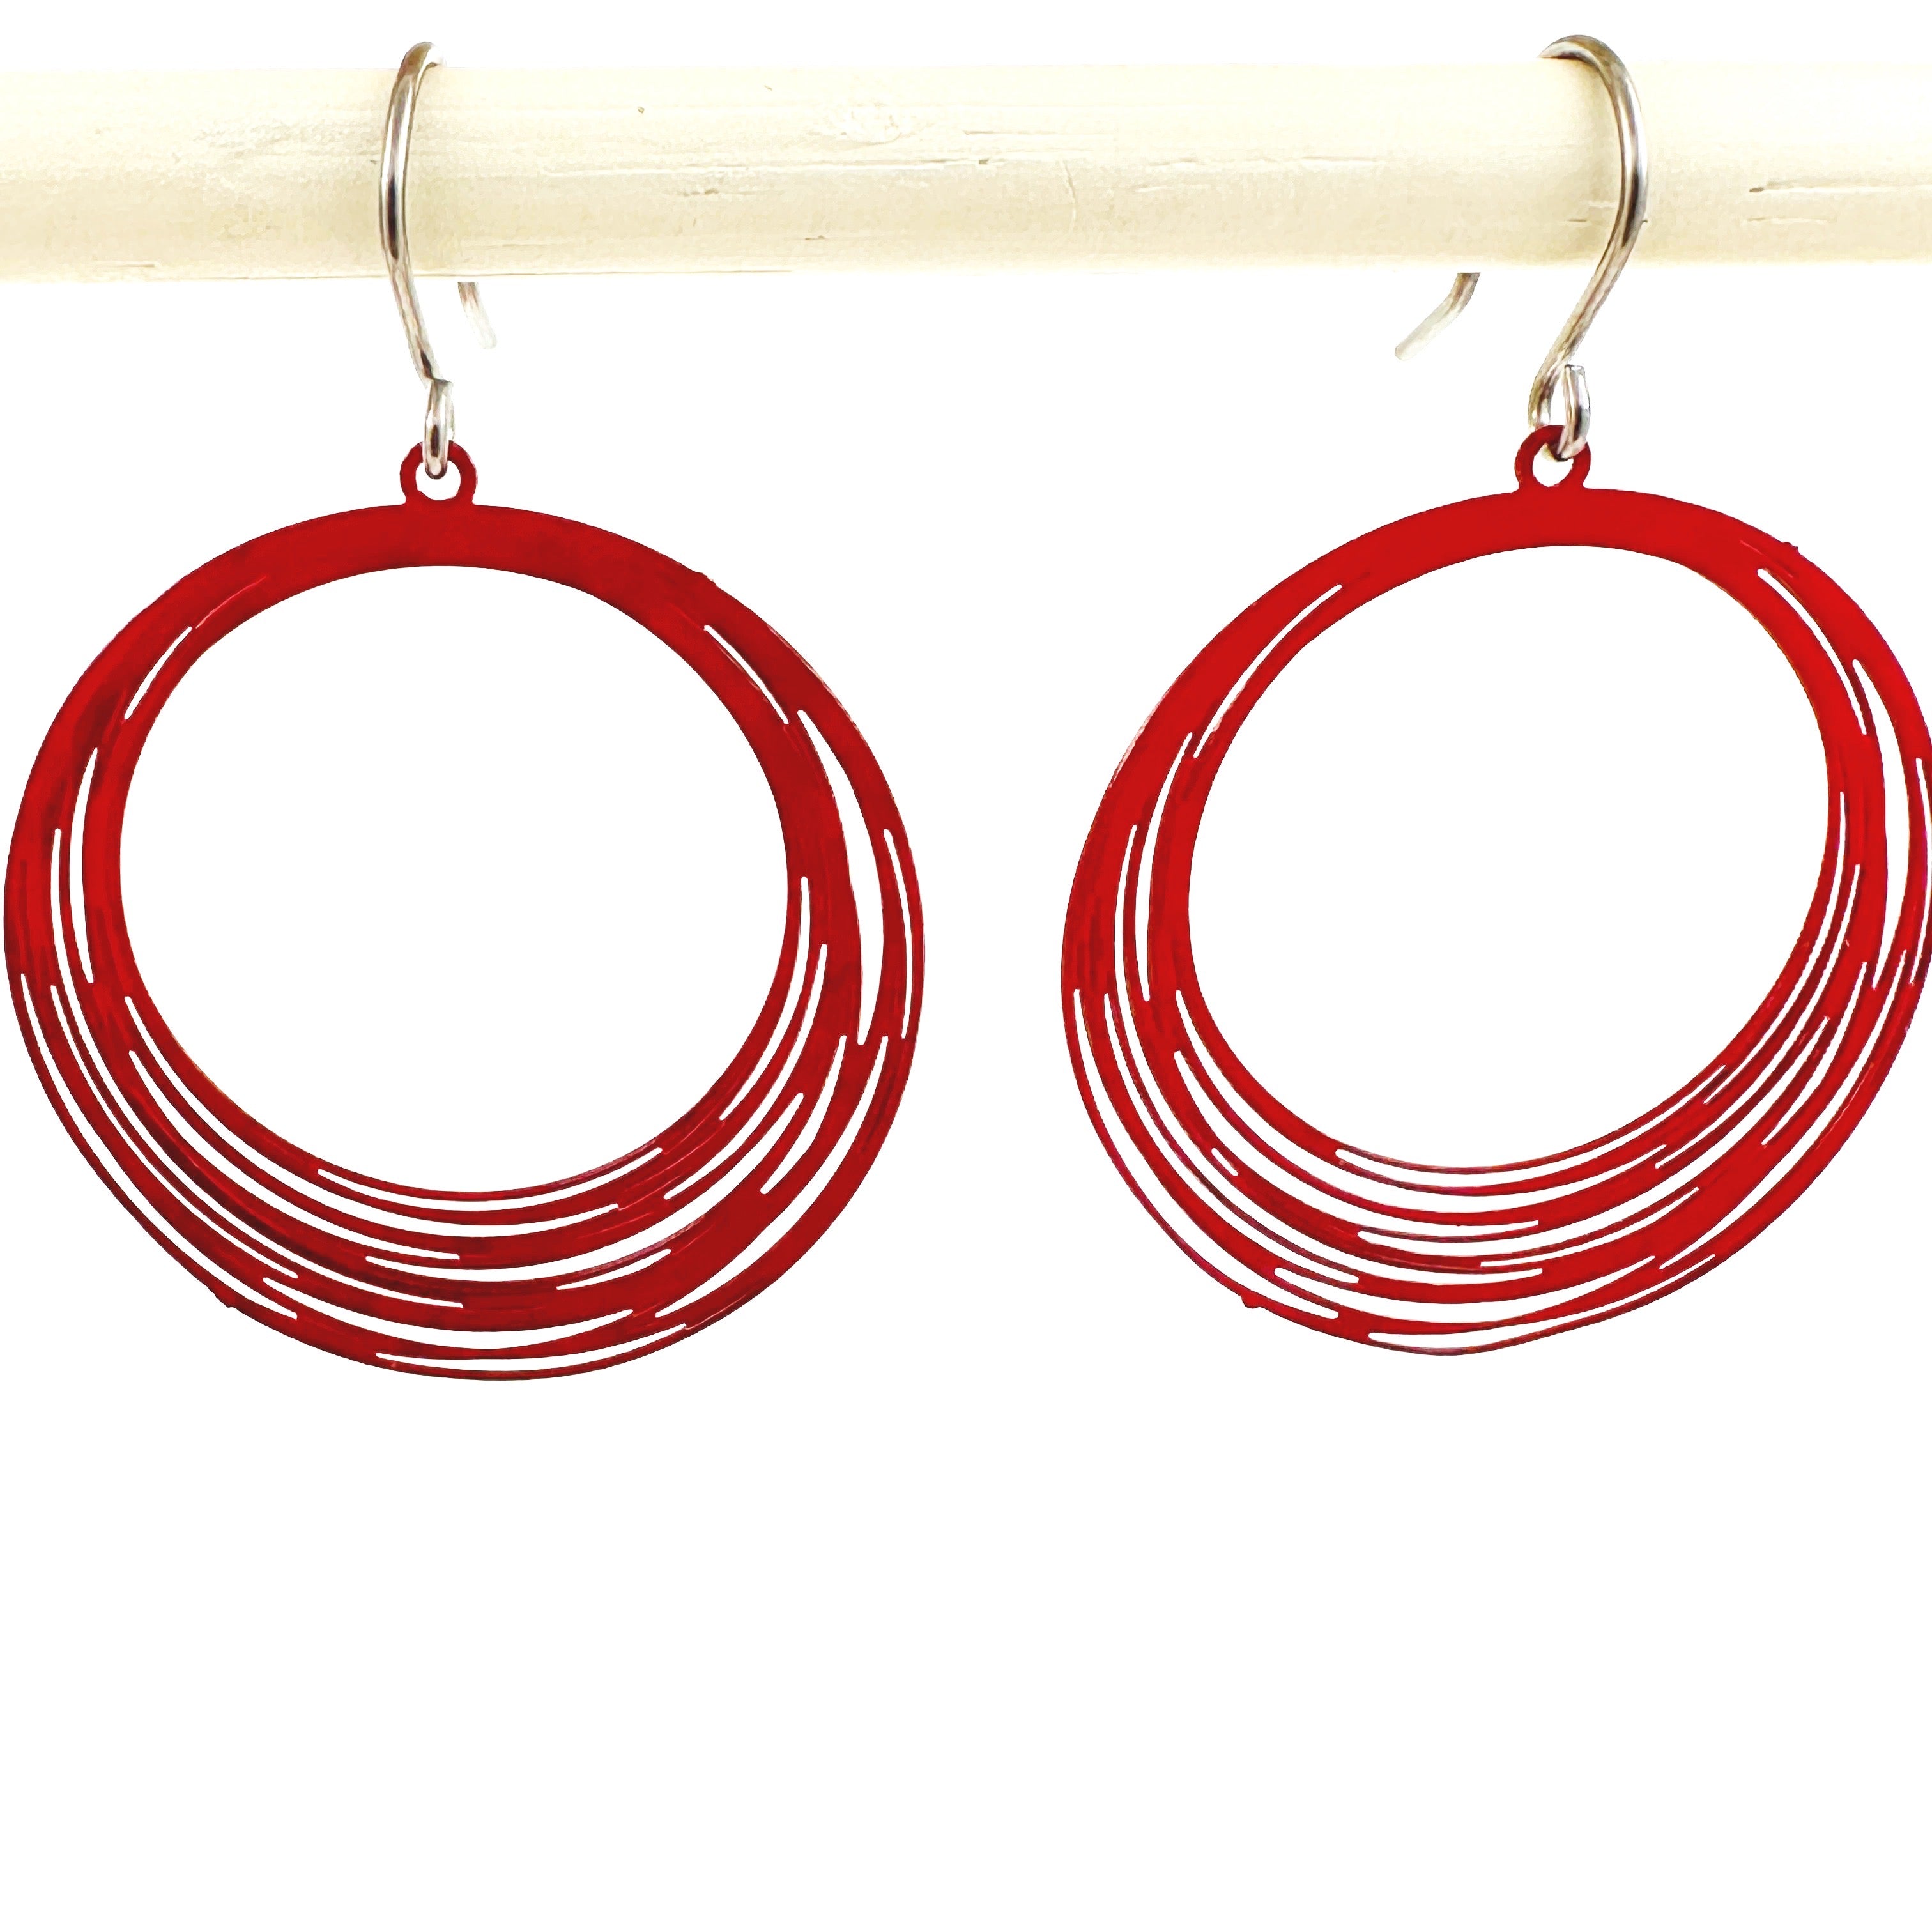 Black / Red / White String Ring earrings